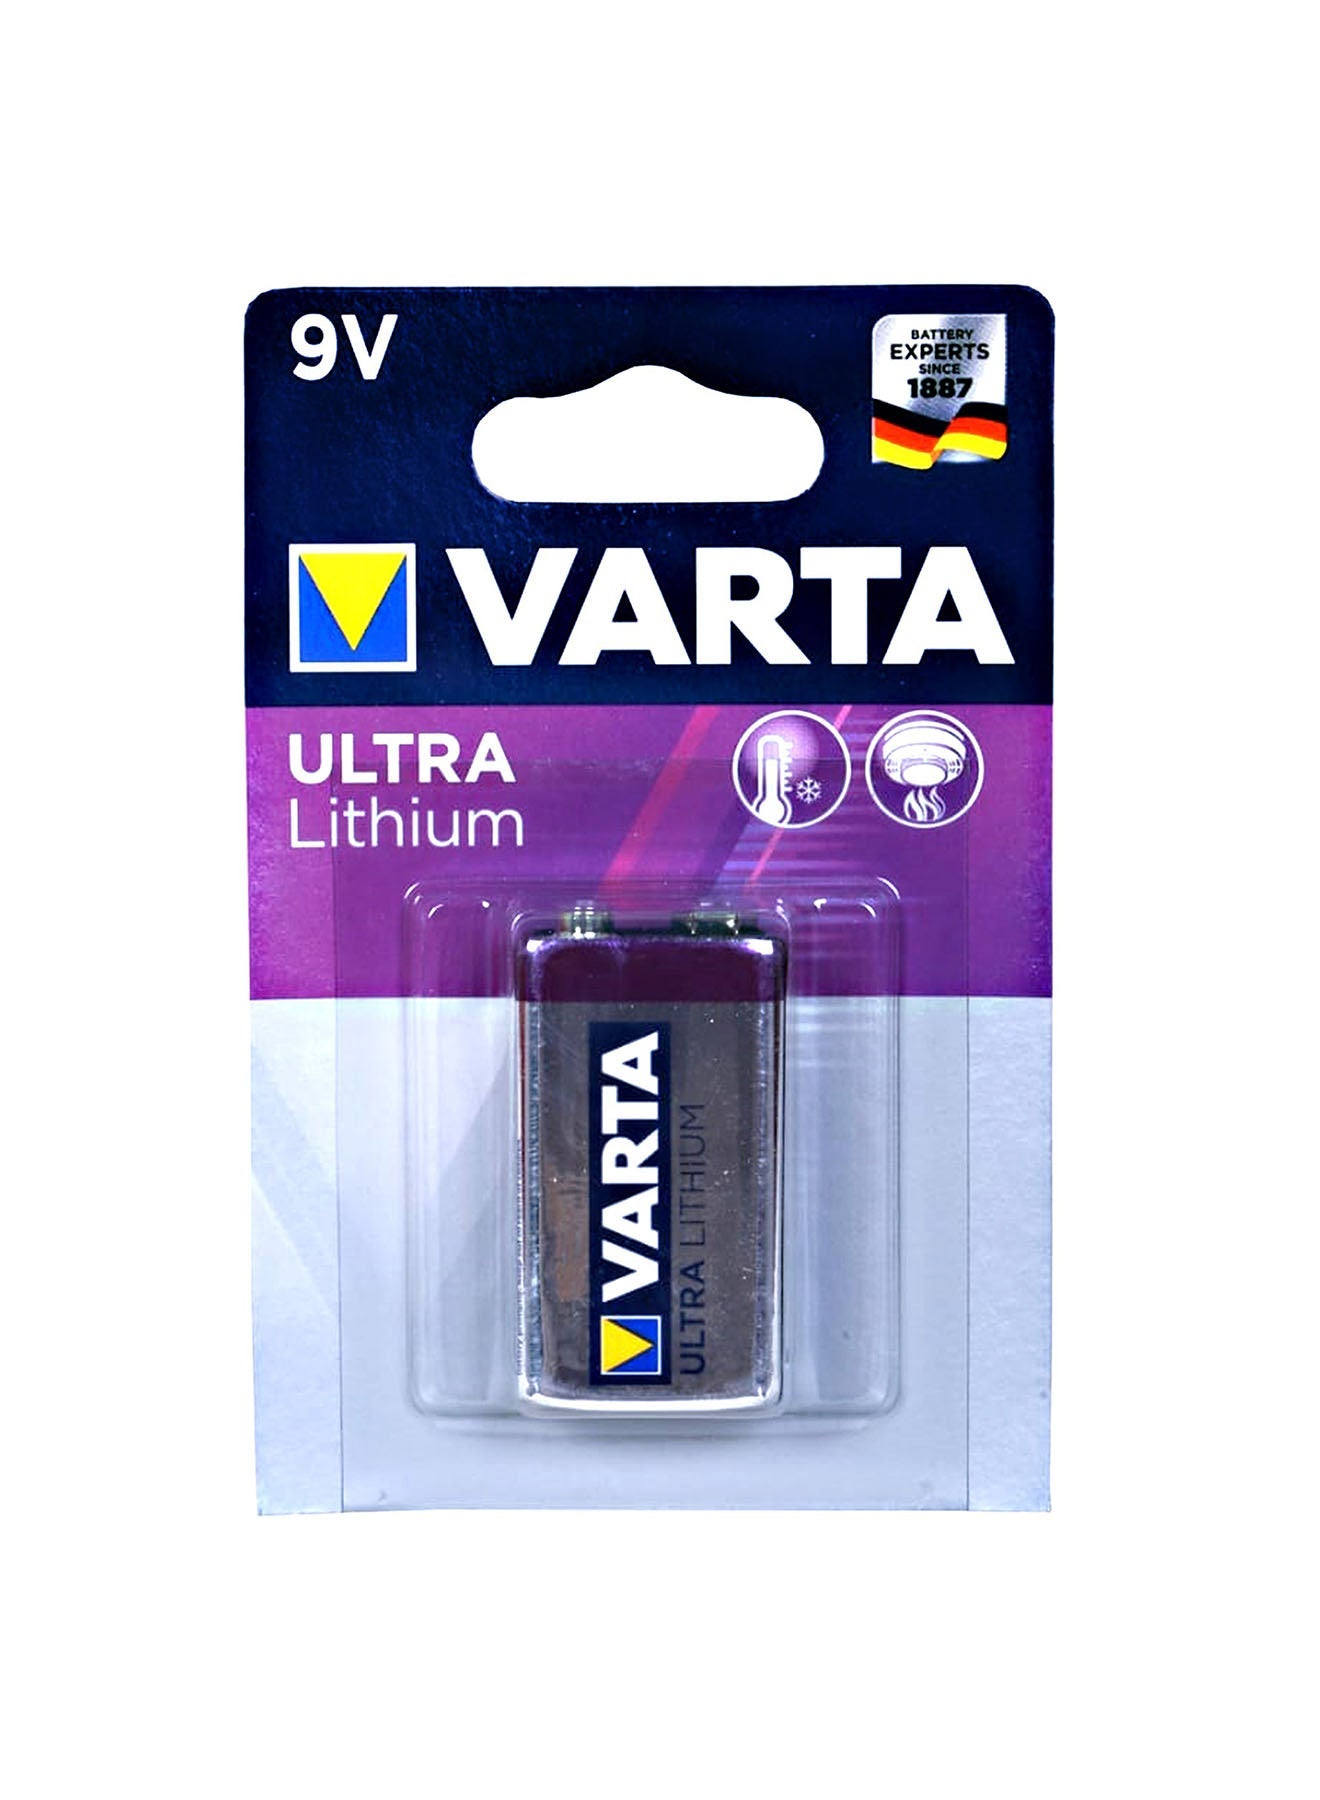 Varta Ultra Lithium 9VBlock 6 LR Batteries Value Pack of 3 